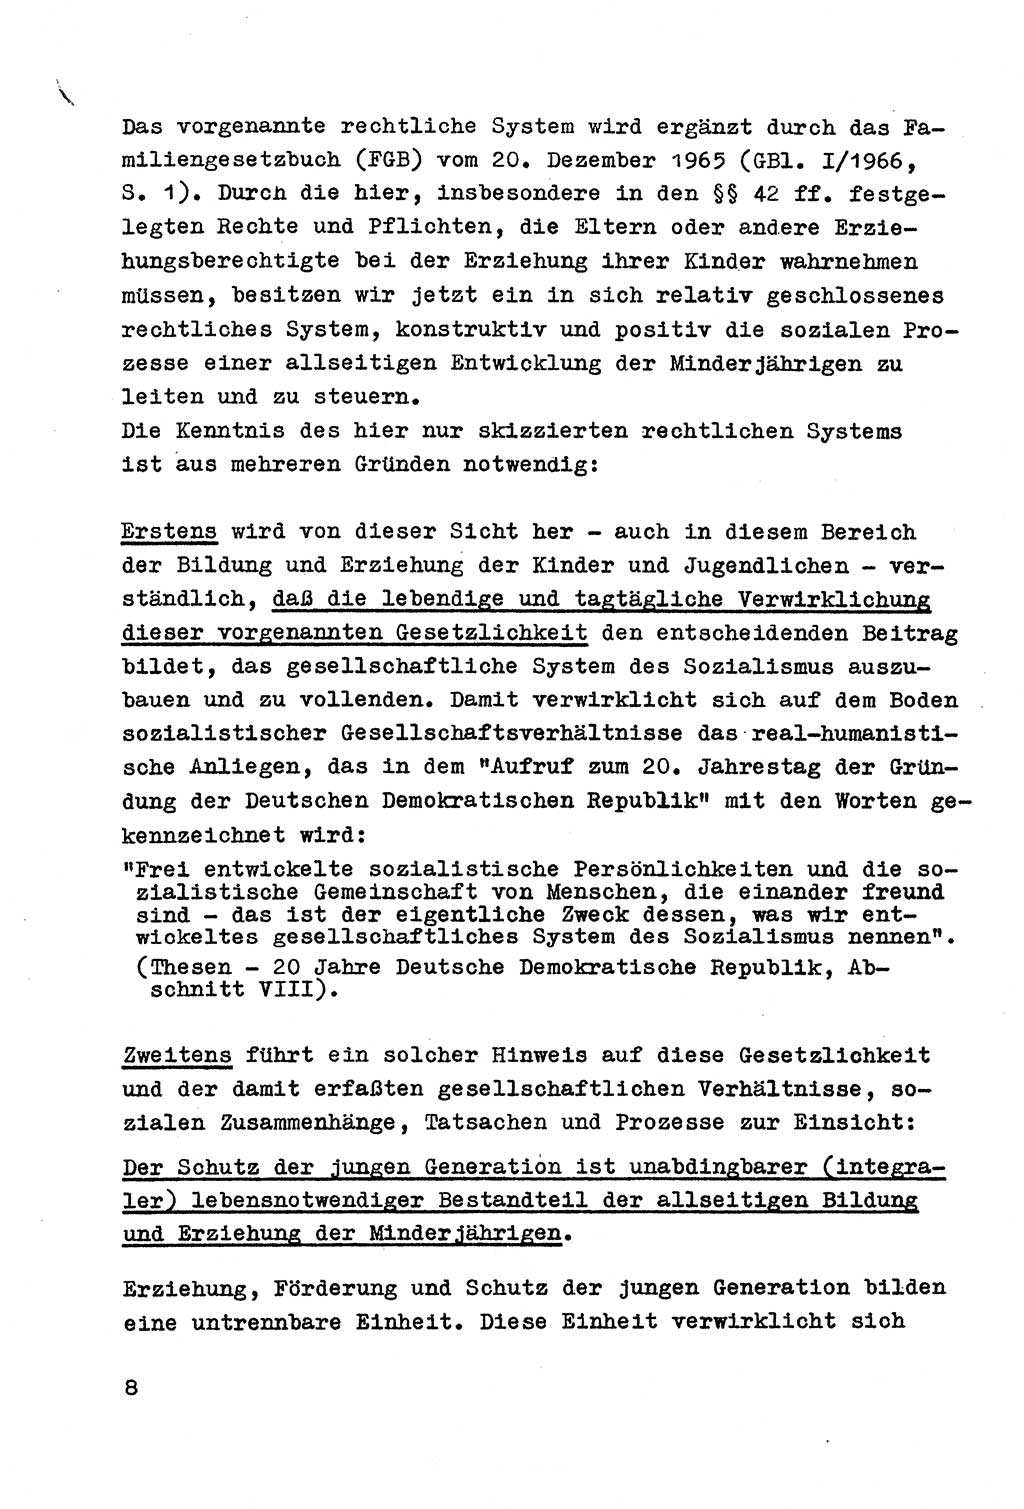 Strafrecht der DDR (Deutsche Demokratische Republik), Besonderer Teil, Lehrmaterial, Heft 4 1969, Seite 8 (Strafr. DDR BT Lehrmat. H. 4 1969, S. 8)